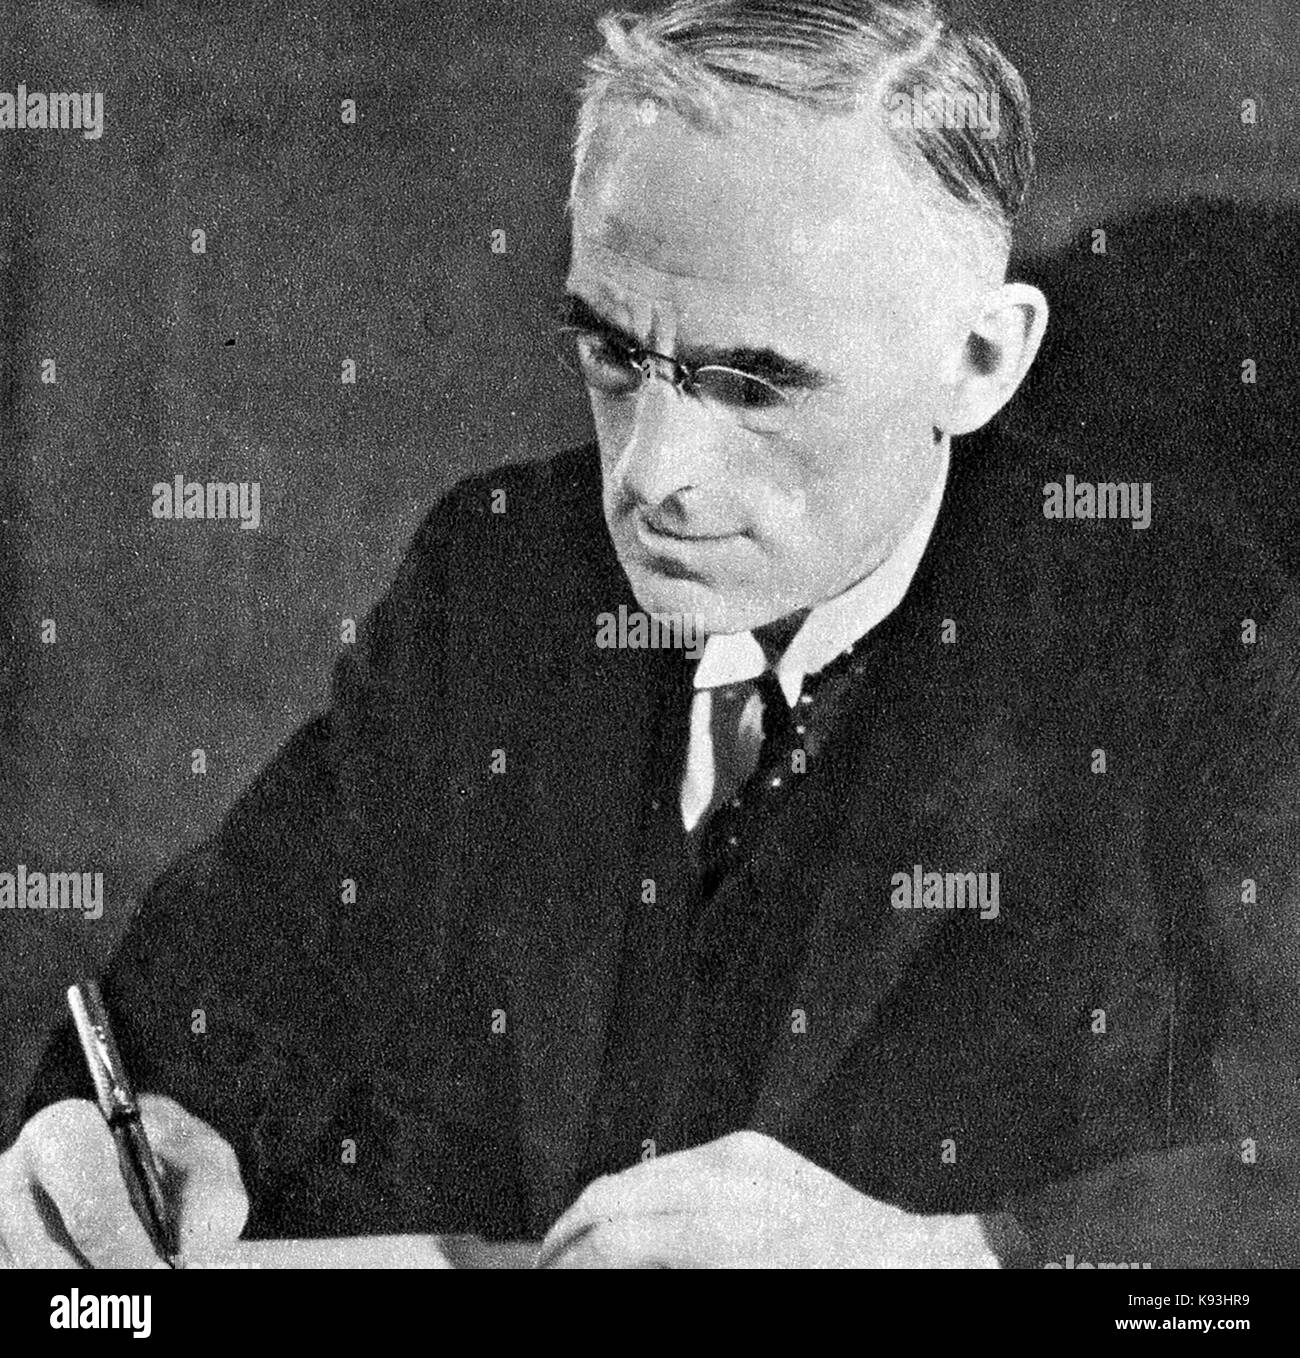 1935 - ein Porträt der Vorsitzende London County Council Chairman, Harry (Herr) Snell nach dem Labor eine Wahl Mehrheit - Labour MP gewonnen. Stockfoto